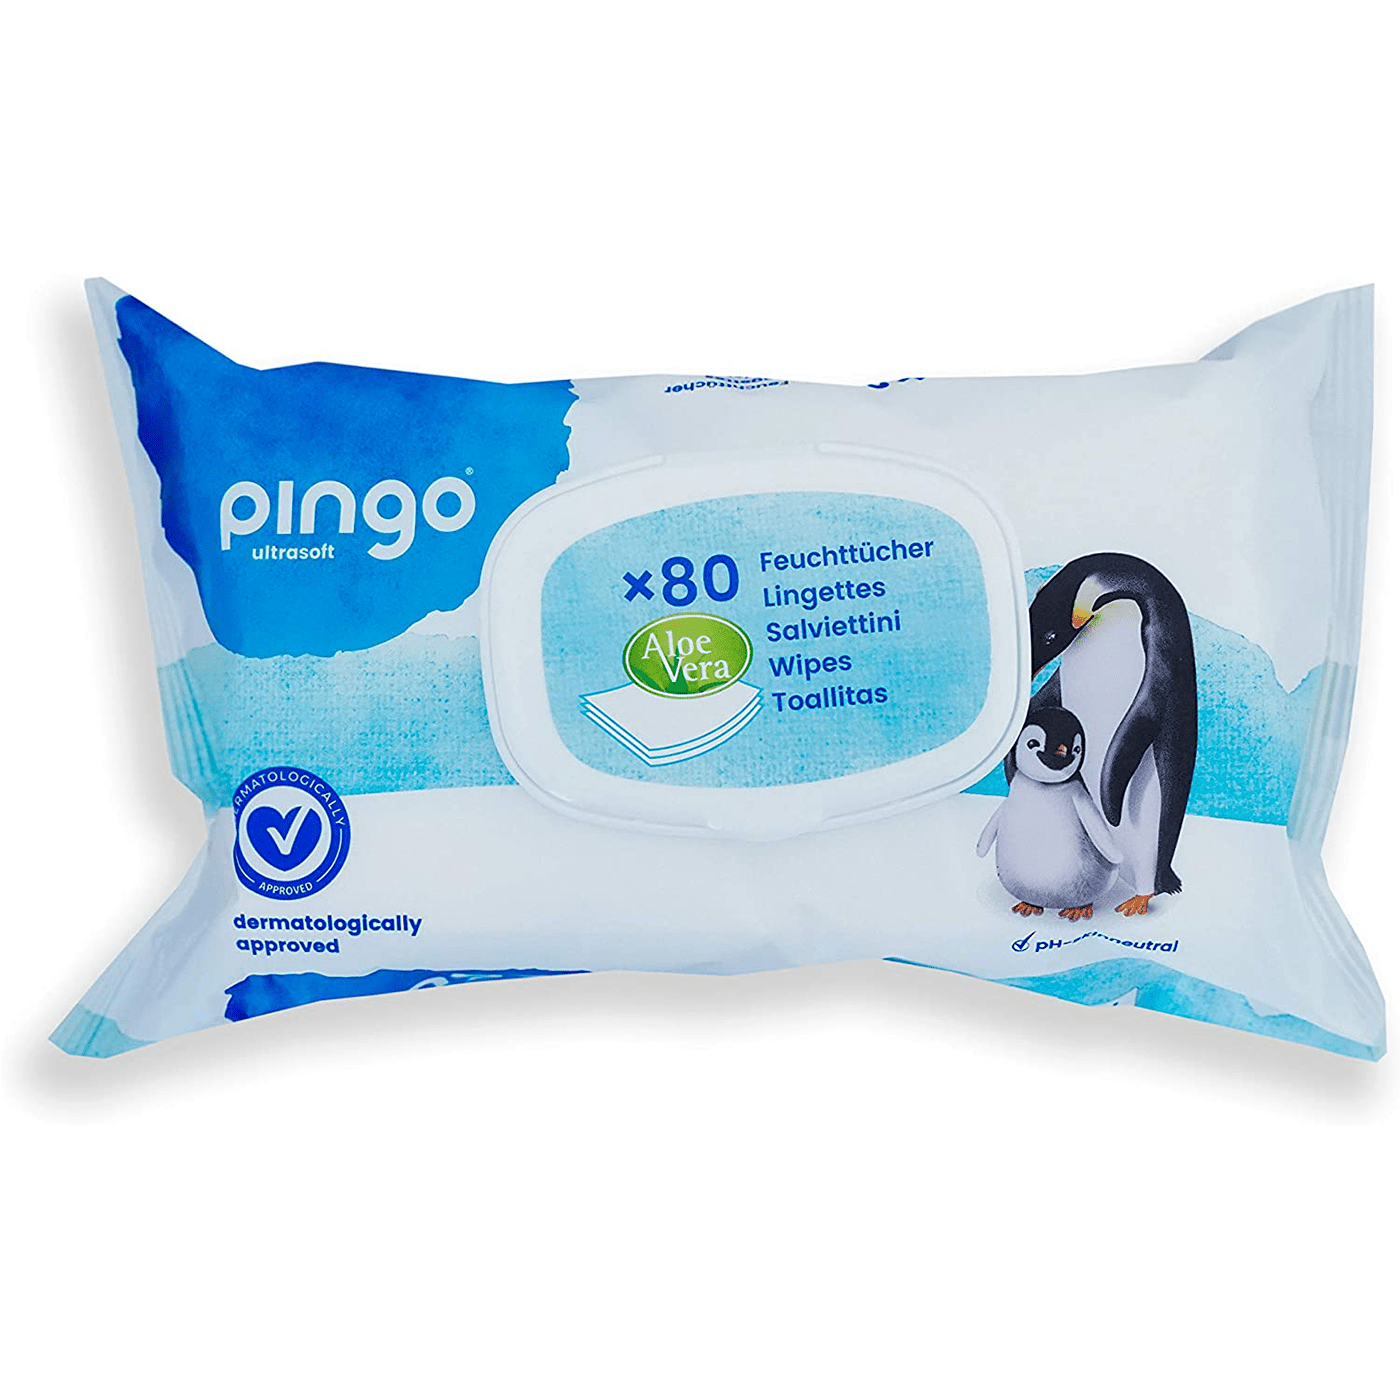 Cuales son los ingredientes que hemos elegido para los pañales Pingo? 